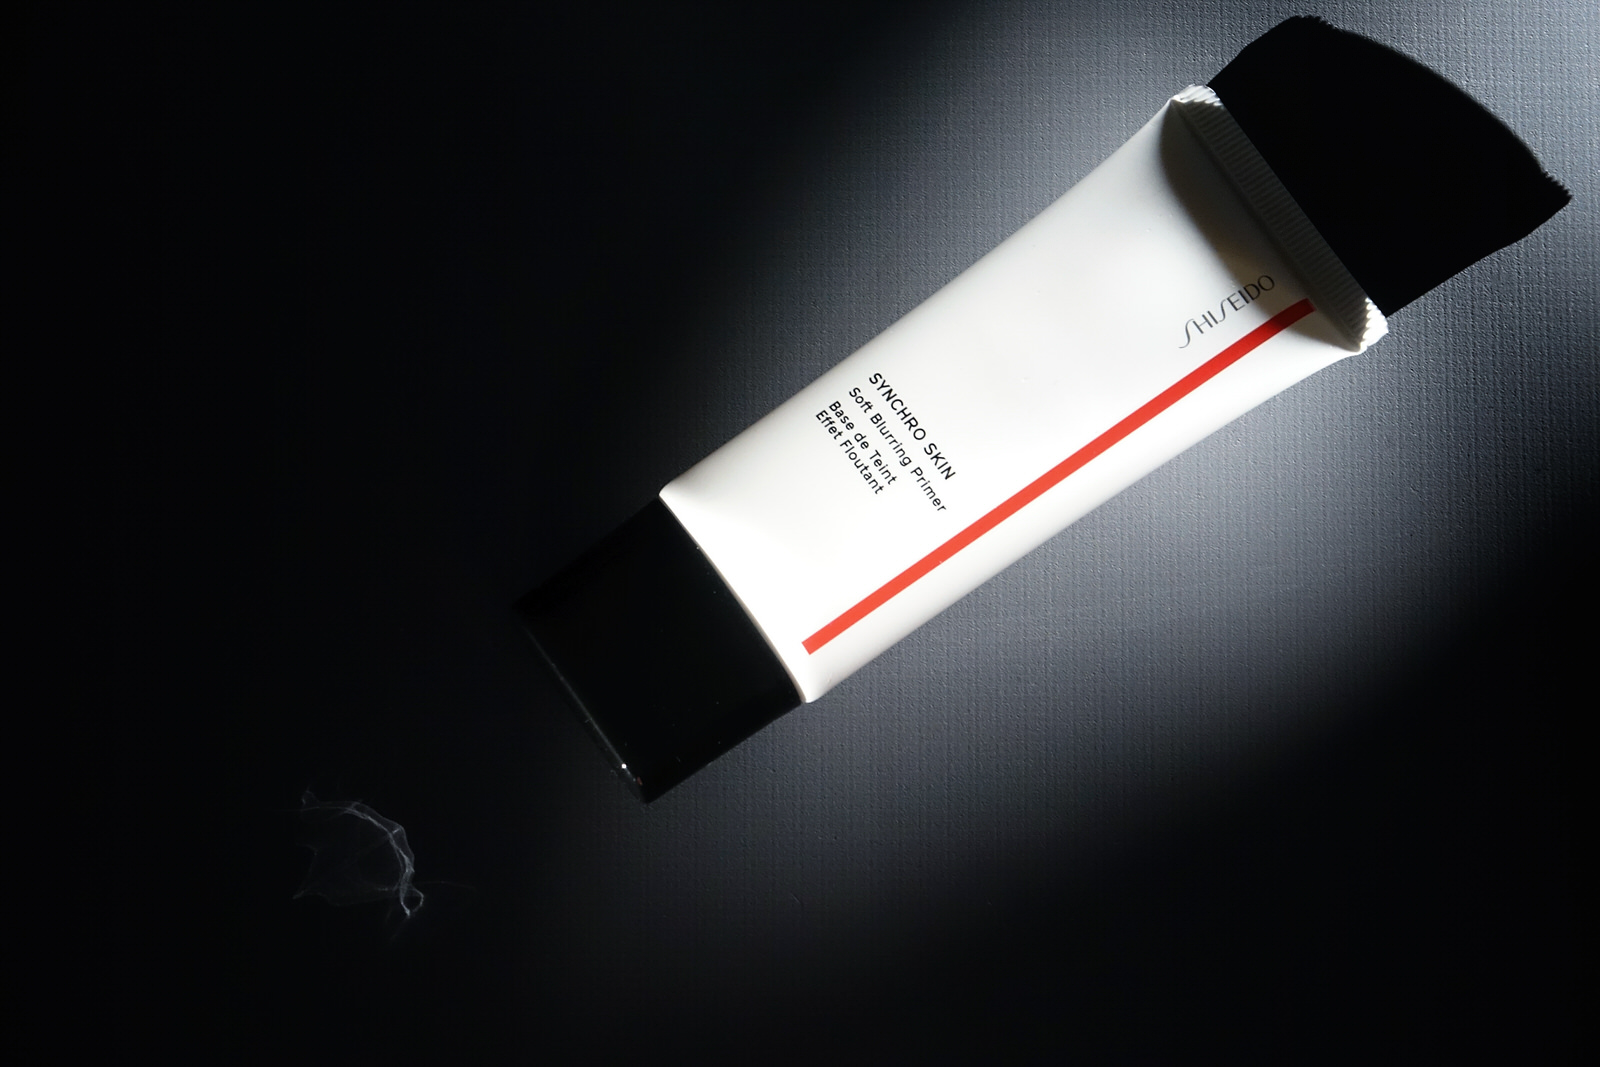 Les nouveautés Synchro Skin pour le teint de Shiseido